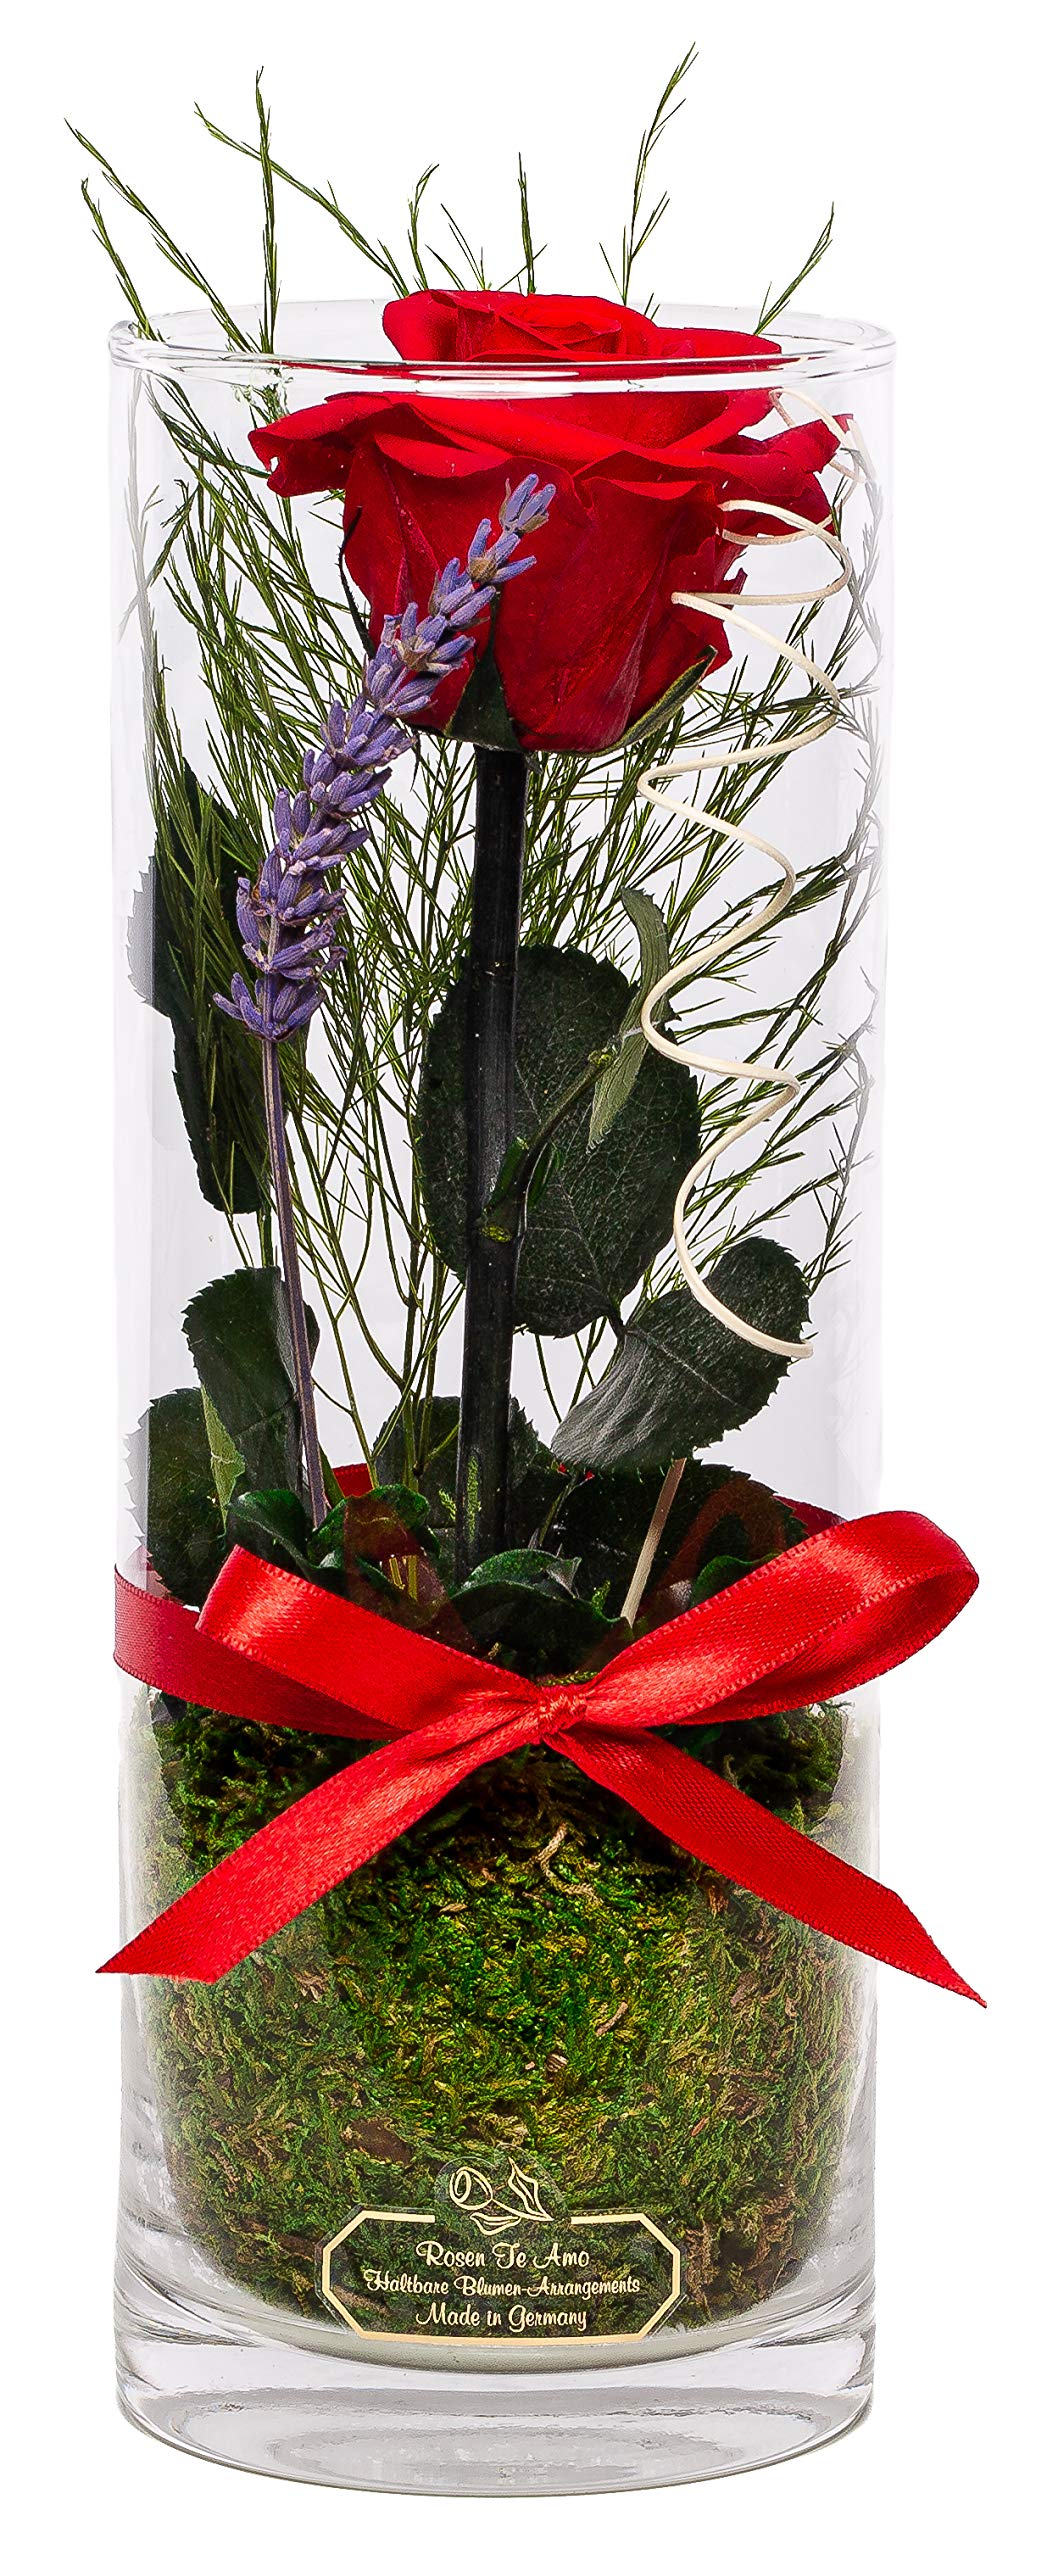 Rosen-Te-Amo | Muttertag Infinity Rosen | konservierte ewige Rose am Stiel | duftend | handgefertigt Deko-Foliage | feines Design im Glas-Vase | Geschenk für Frauen Mama Freundin Oma